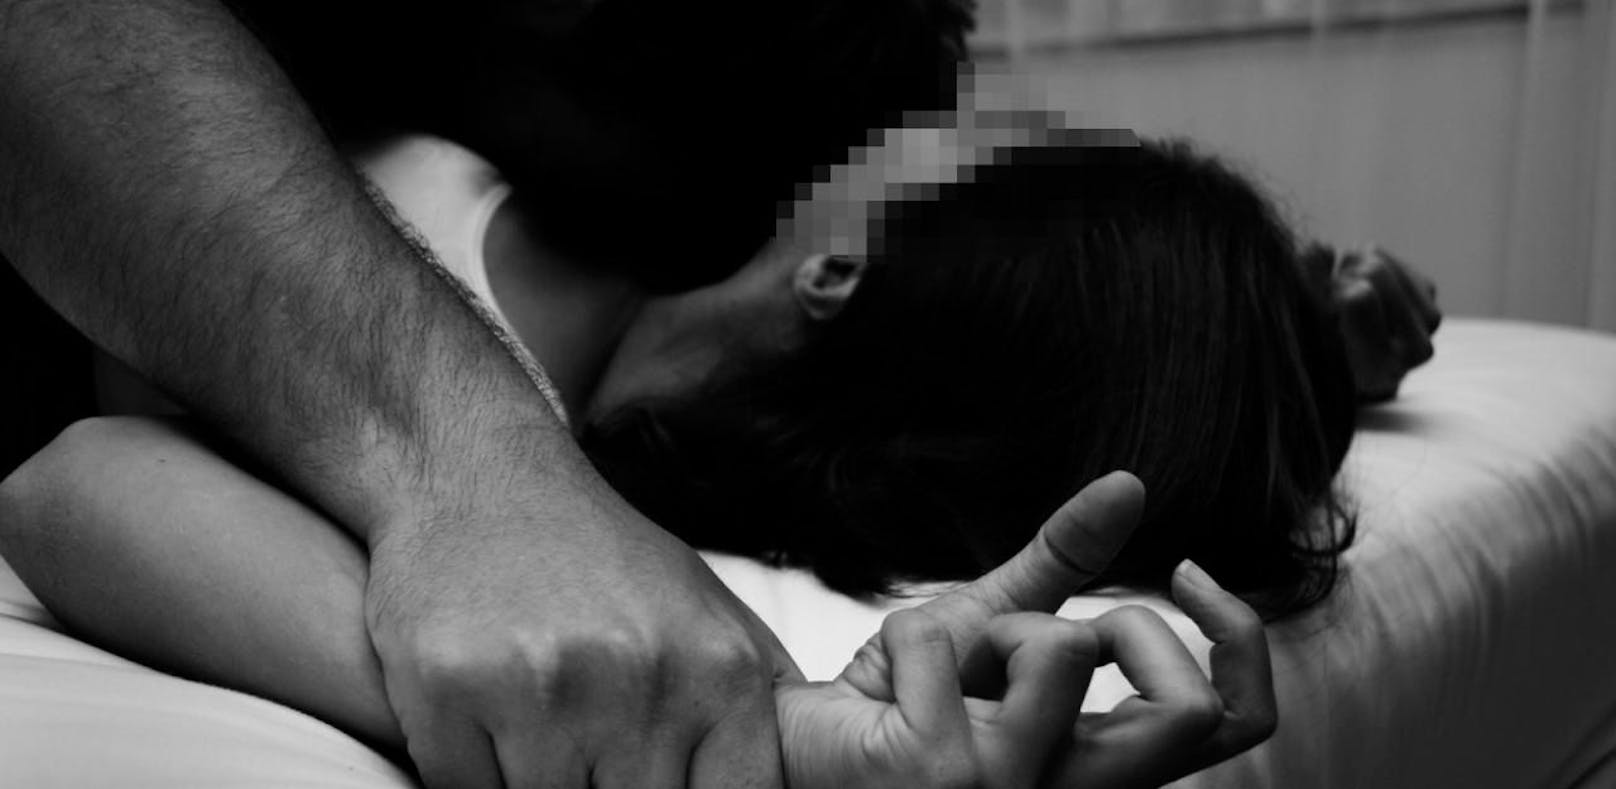 Die 21-Jährige wurde in ihrer Wohnung sexuell missbraucht